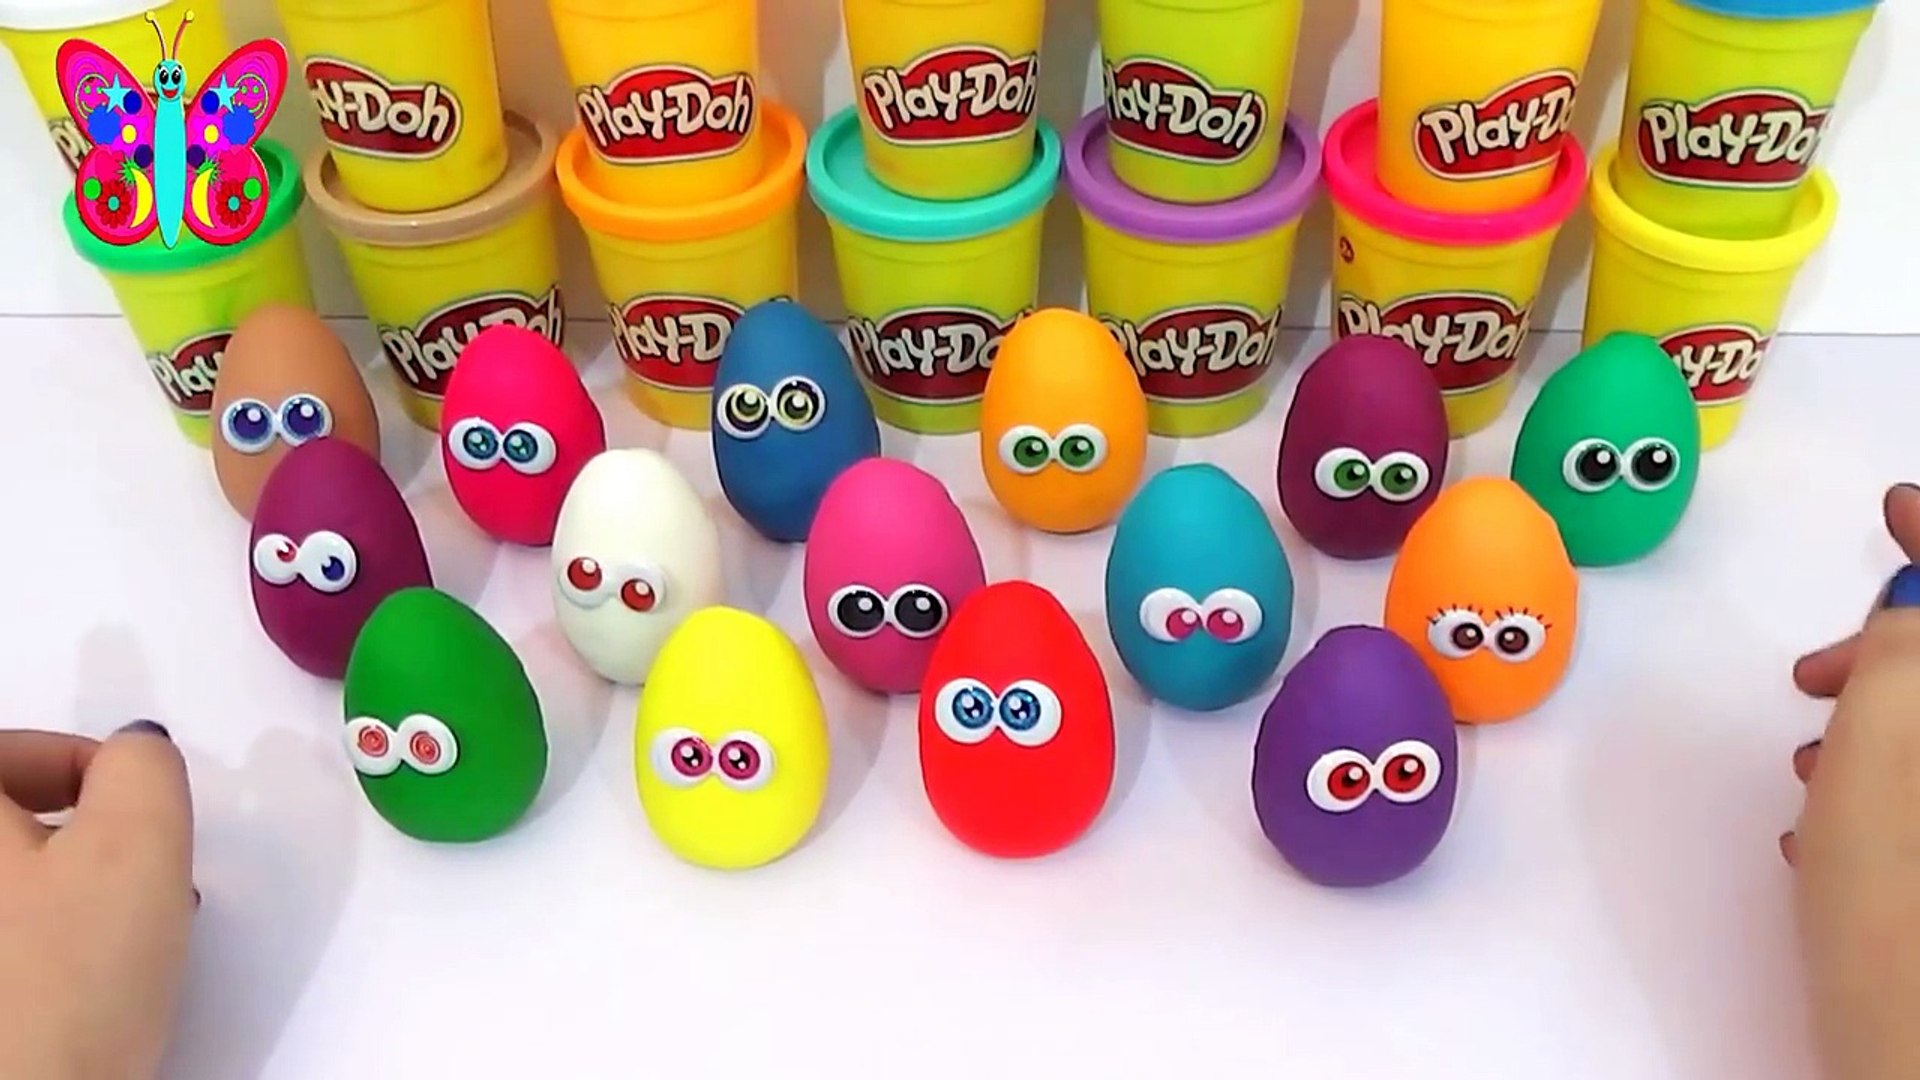 15 huevos de plastilina play doh en español con juguetes sorpresa para  niños aprendiendo los colores - Dailymotion Video